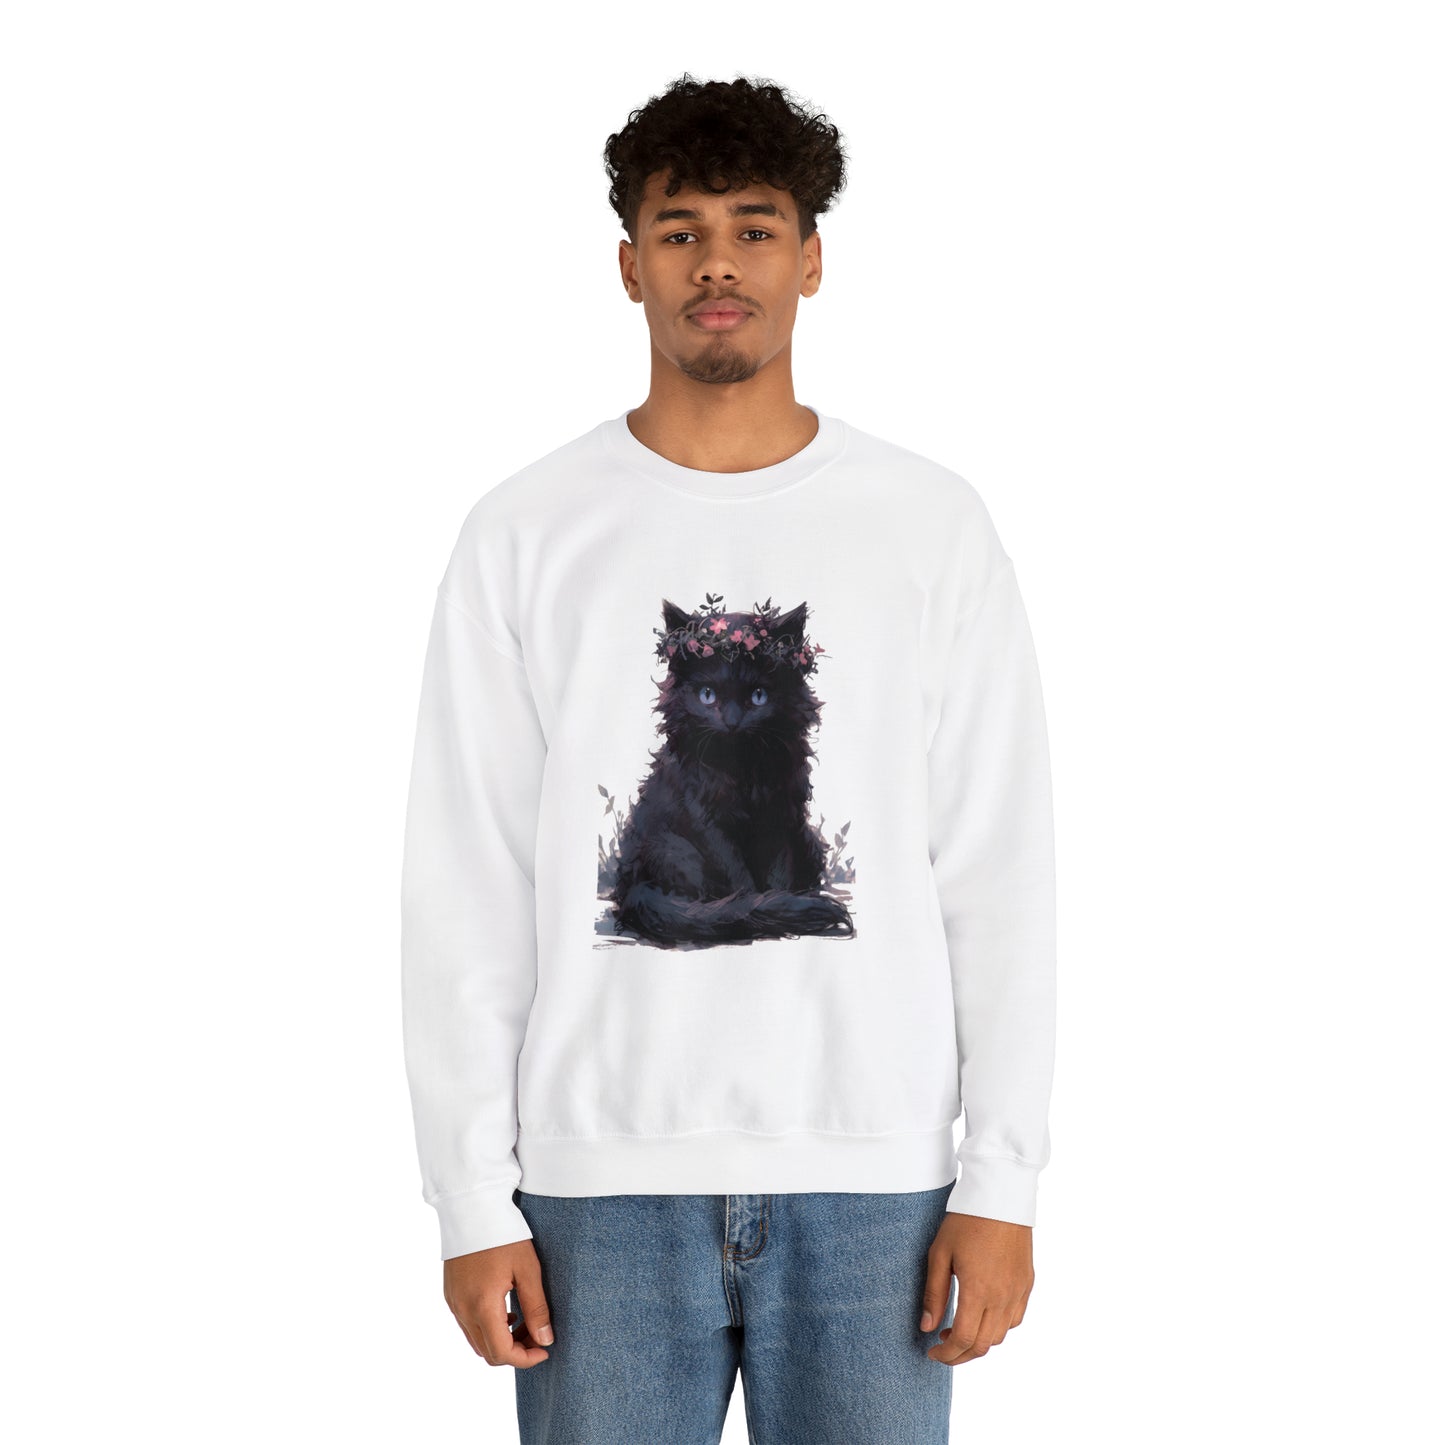 Cat, Black, Women's and Men's Unisex, Crew Neck Sweatshirt